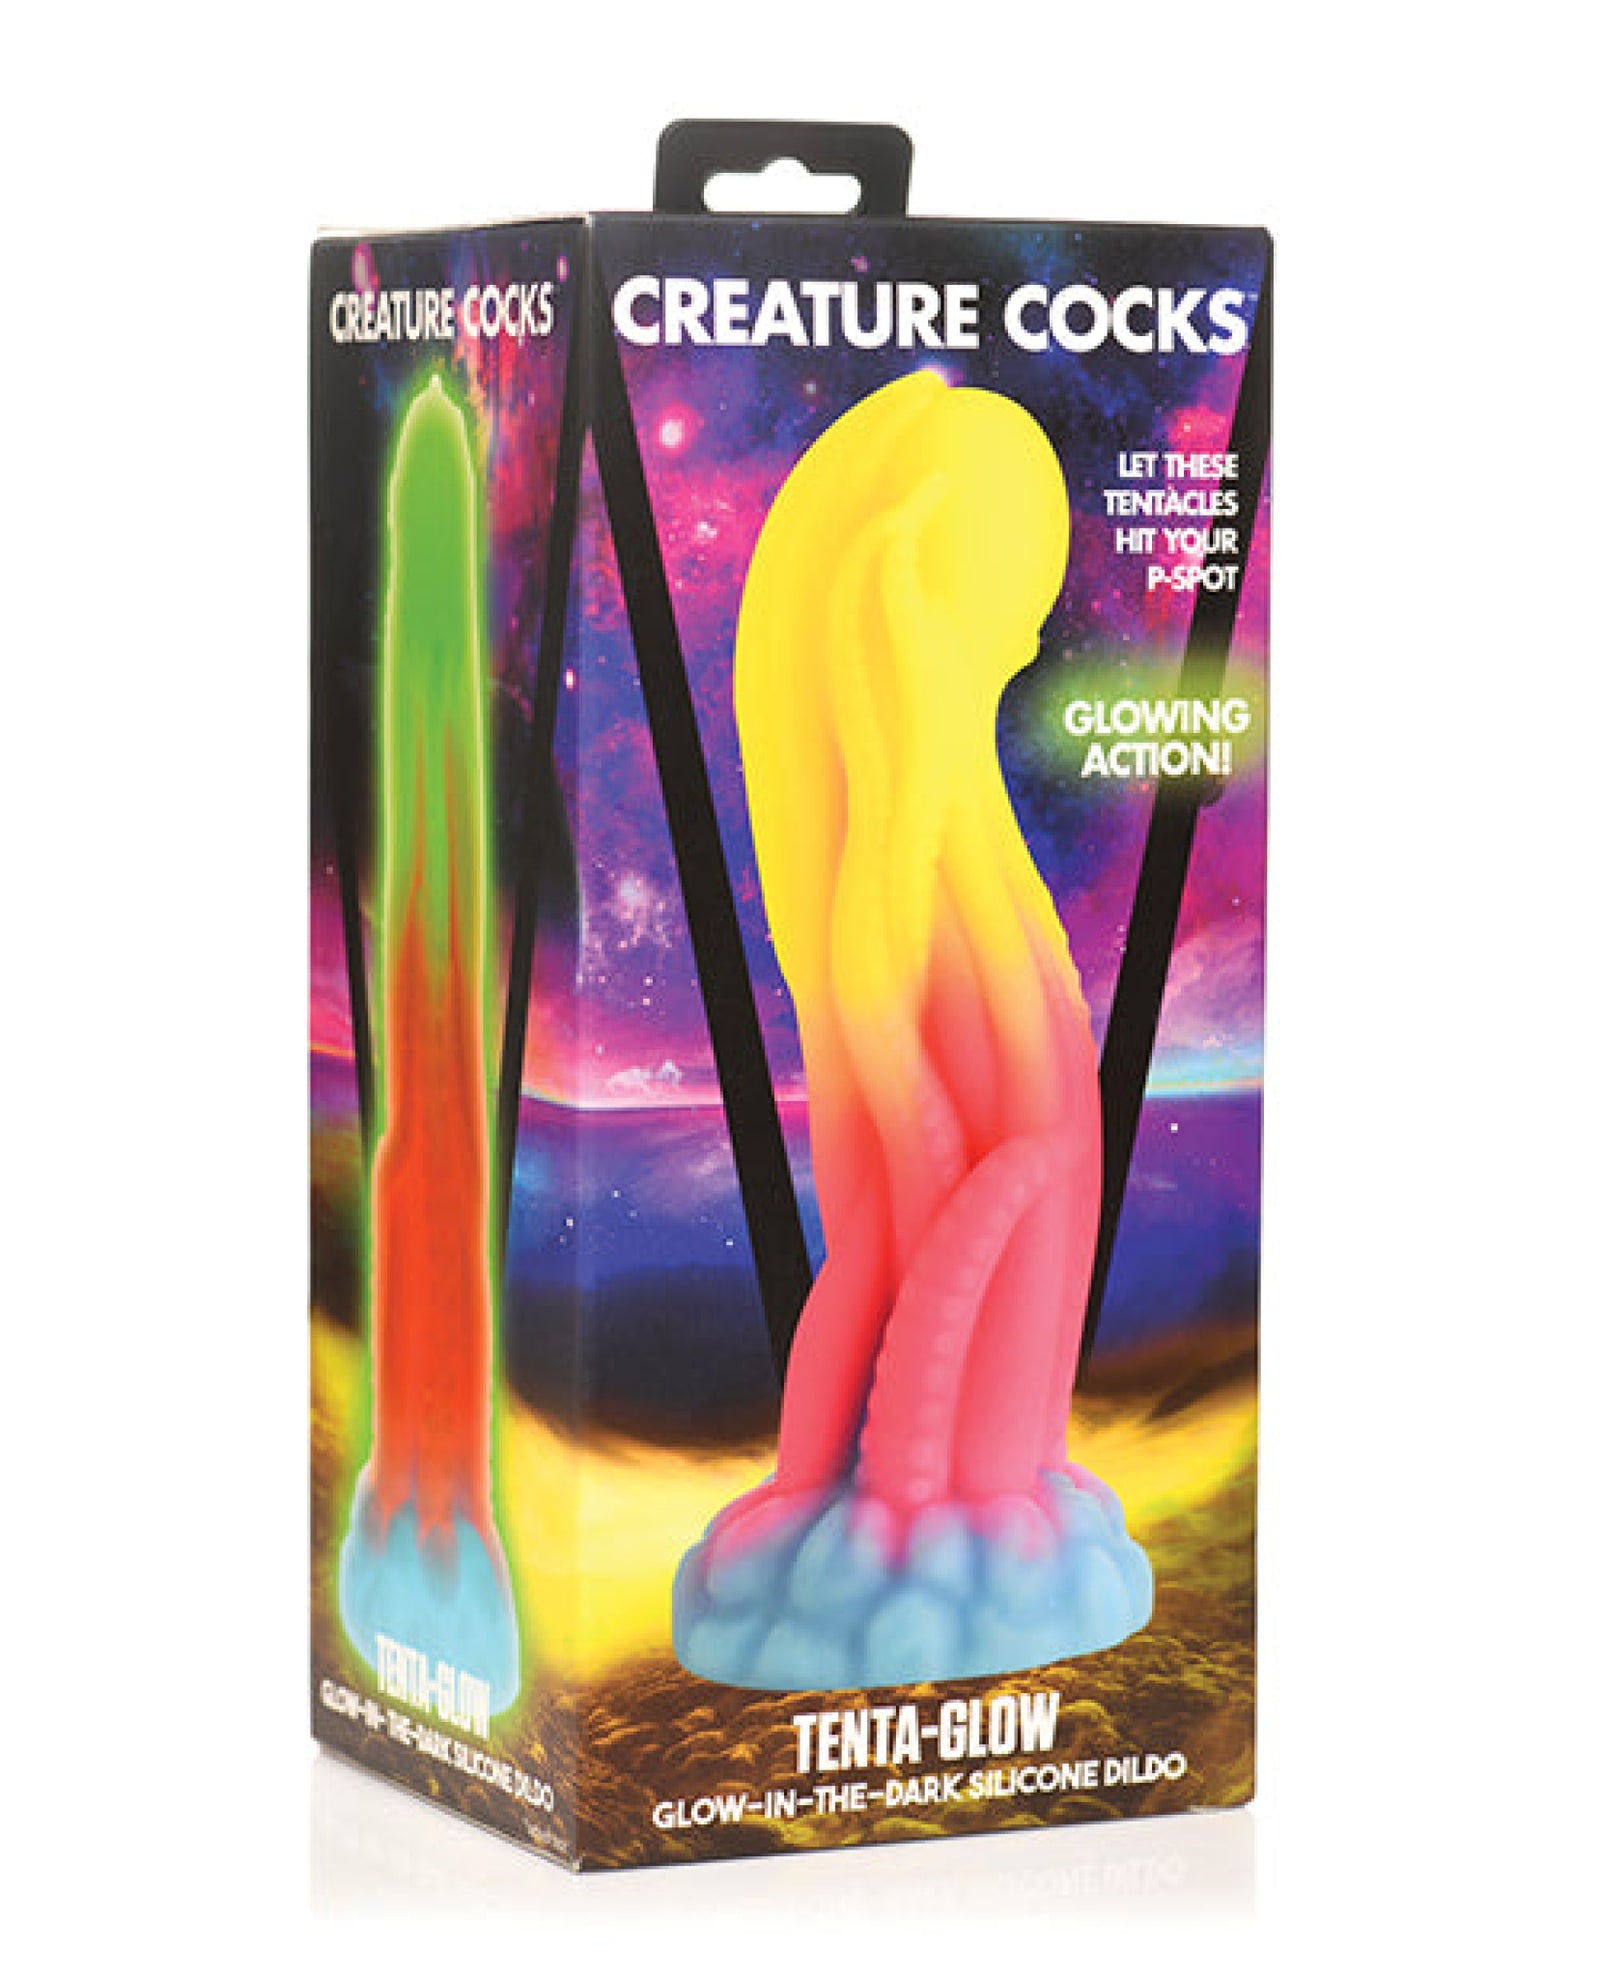 Creature Cocks Tenta-Glow-in-the-Dark Silicone Dildo Creature Cocks